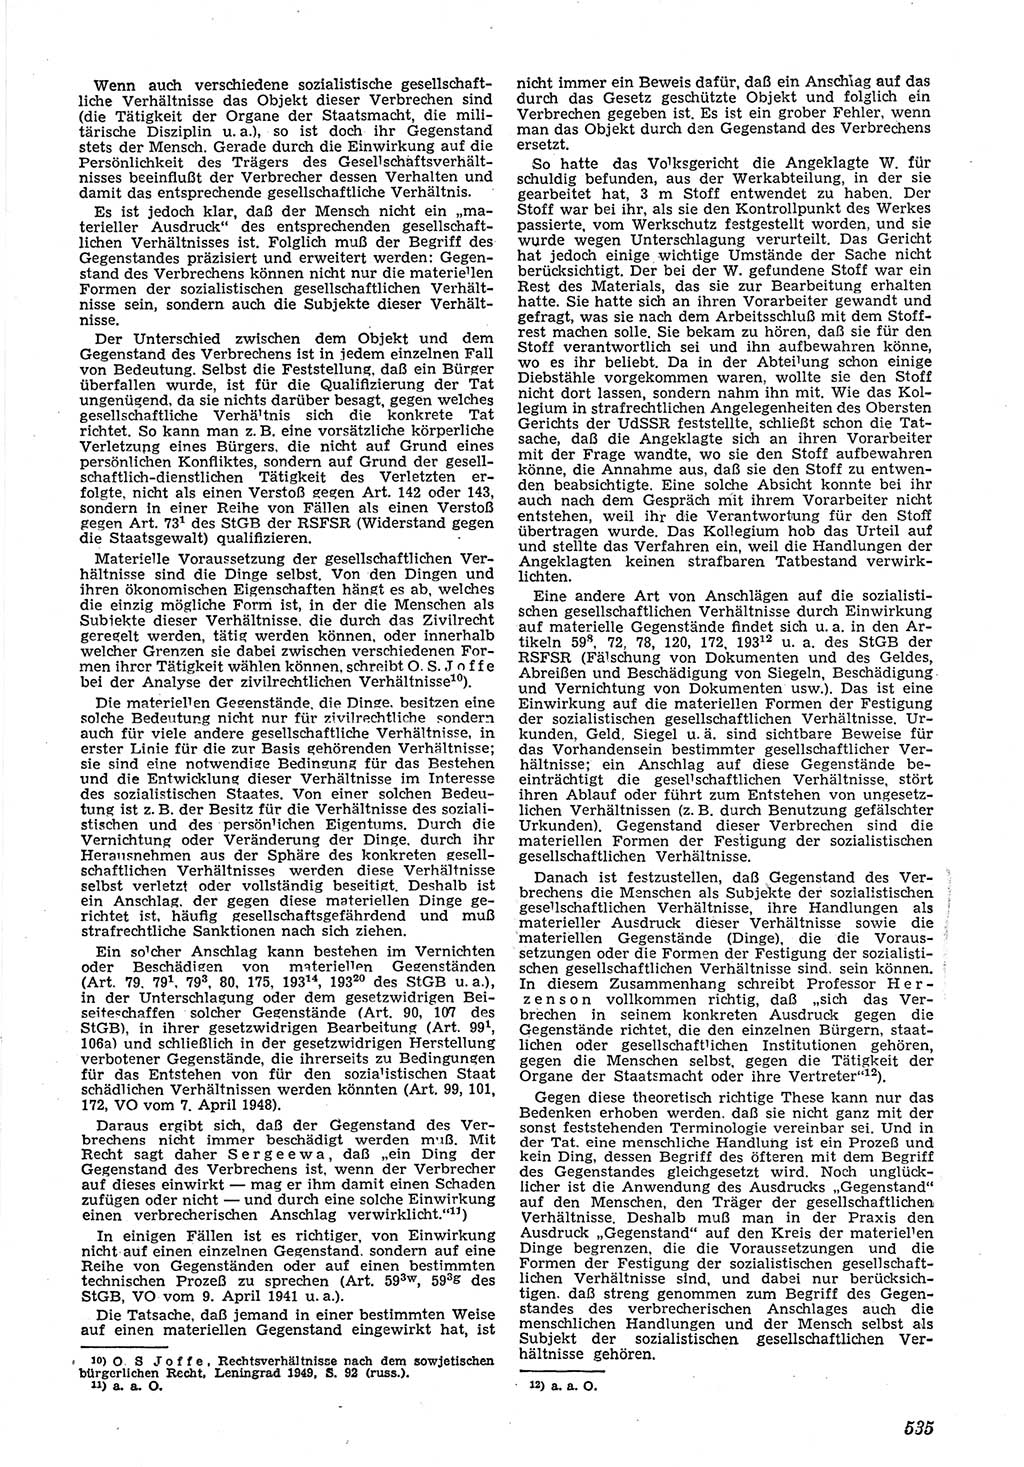 Neue Justiz (NJ), Zeitschrift für Recht und Rechtswissenschaft [Deutsche Demokratische Republik (DDR)], 5. Jahrgang 1951, Seite 535 (NJ DDR 1951, S. 535)